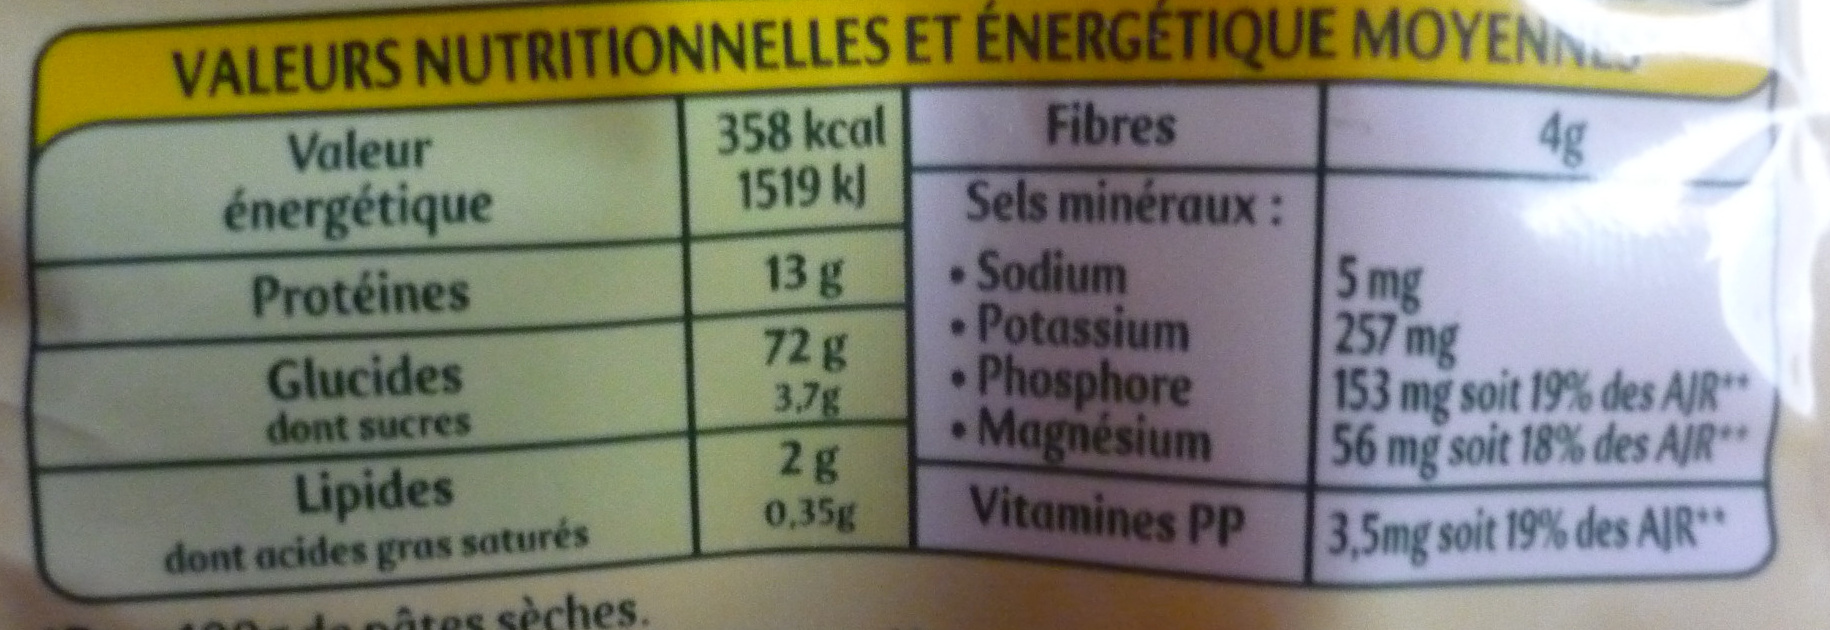 Panzani gansettes 500g - Información nutricional - fr